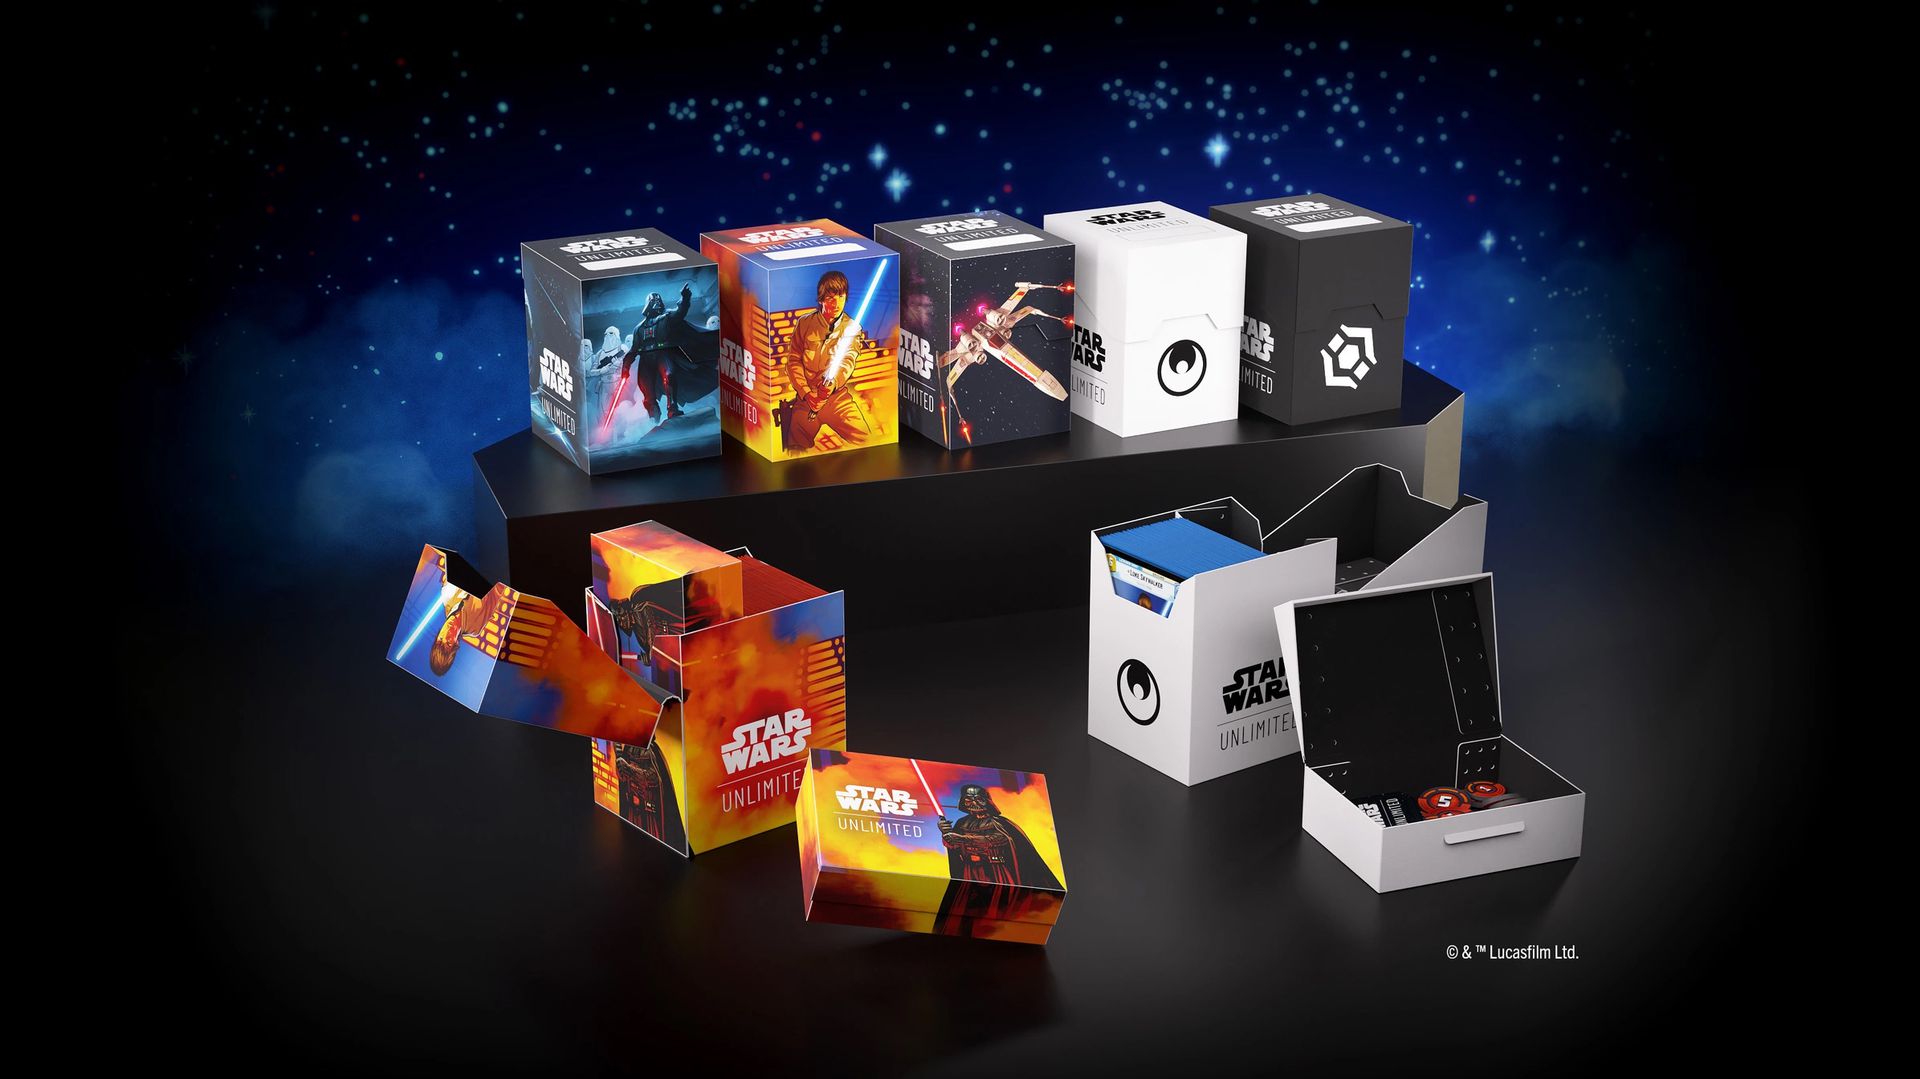 为星球大战无限制制定的五个软箱牌组盒的关键艺术作品